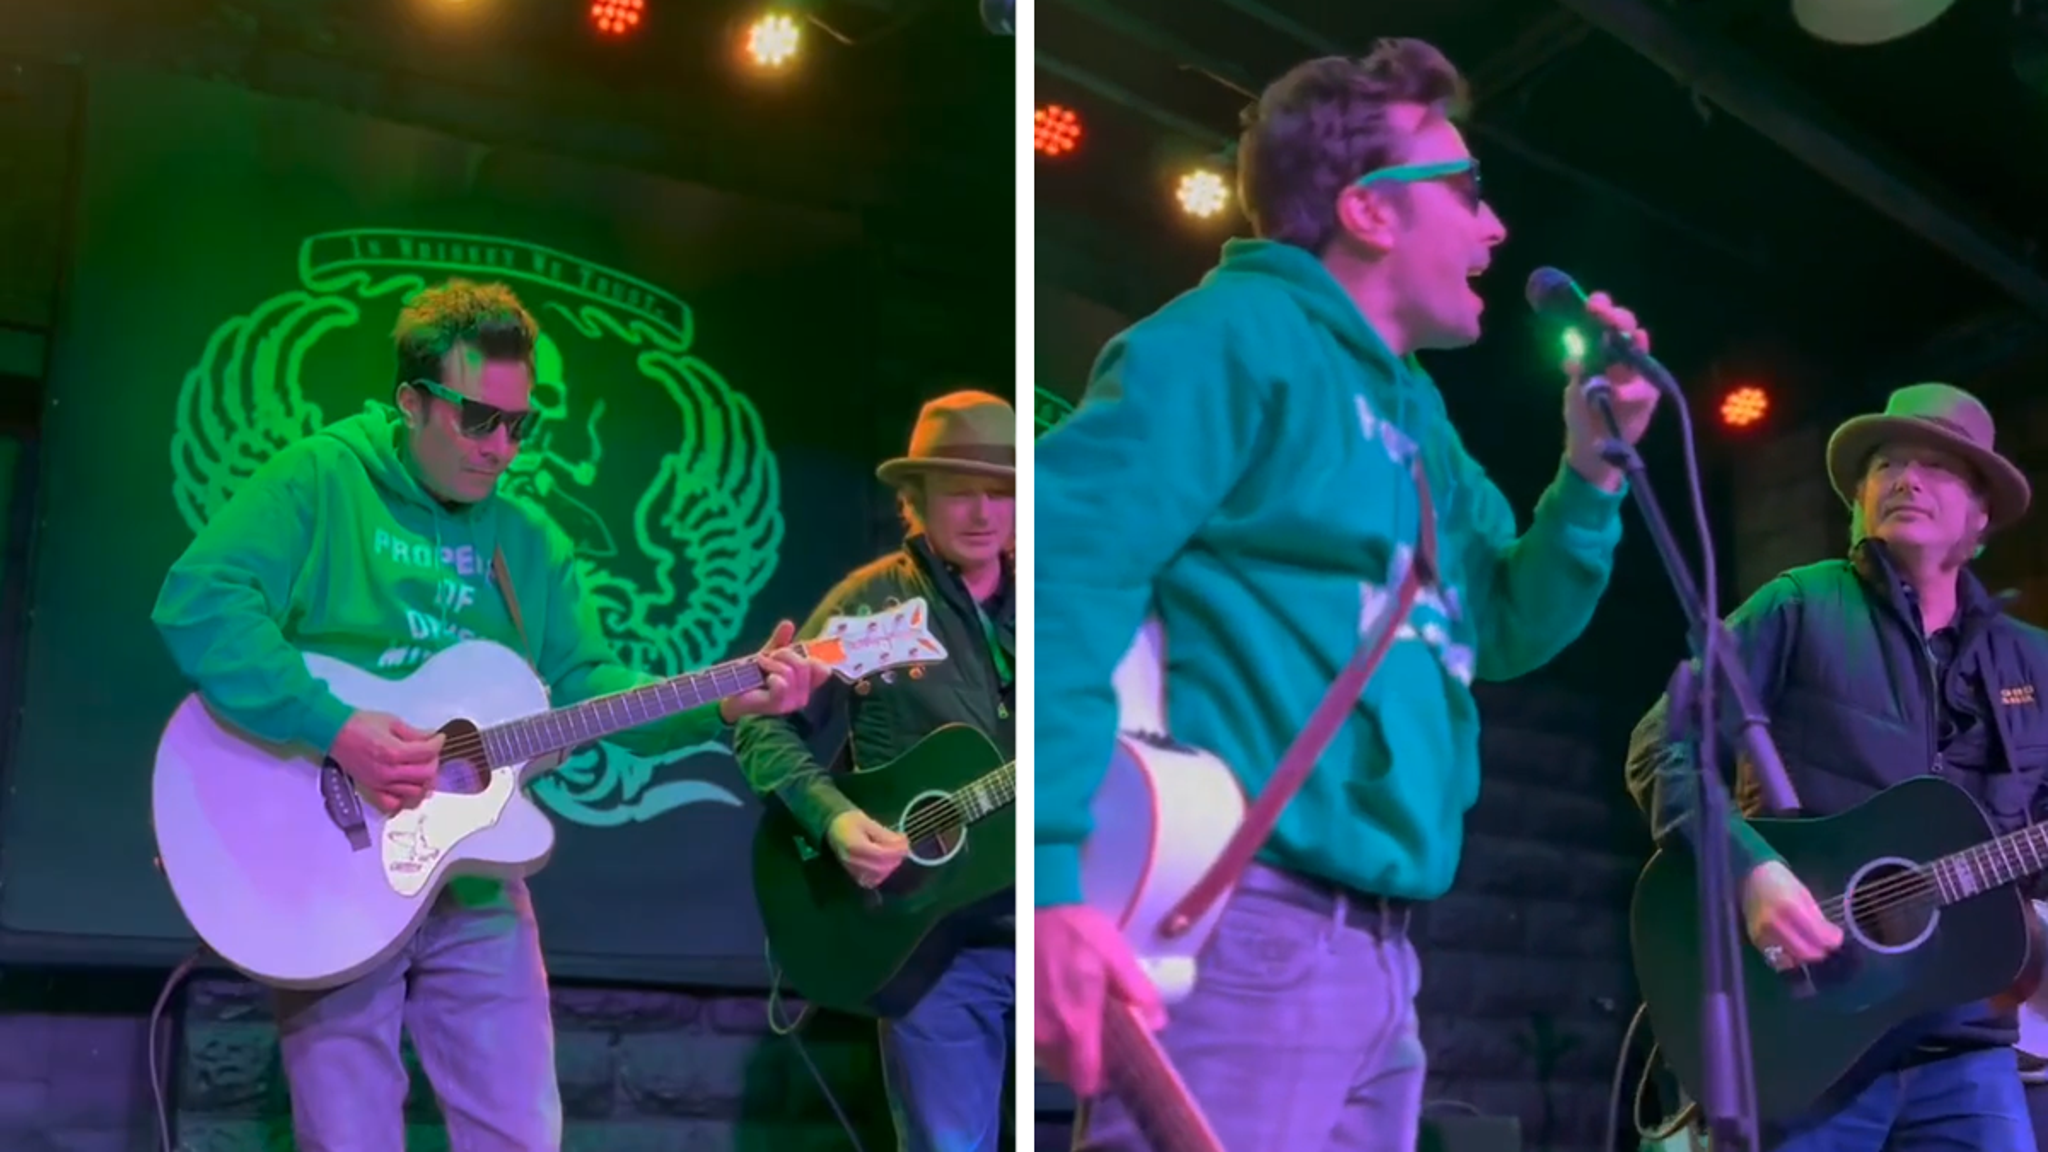 Jimmy Fallon actúa con una banda local de Nueva York en el bar el Día de San Patricio